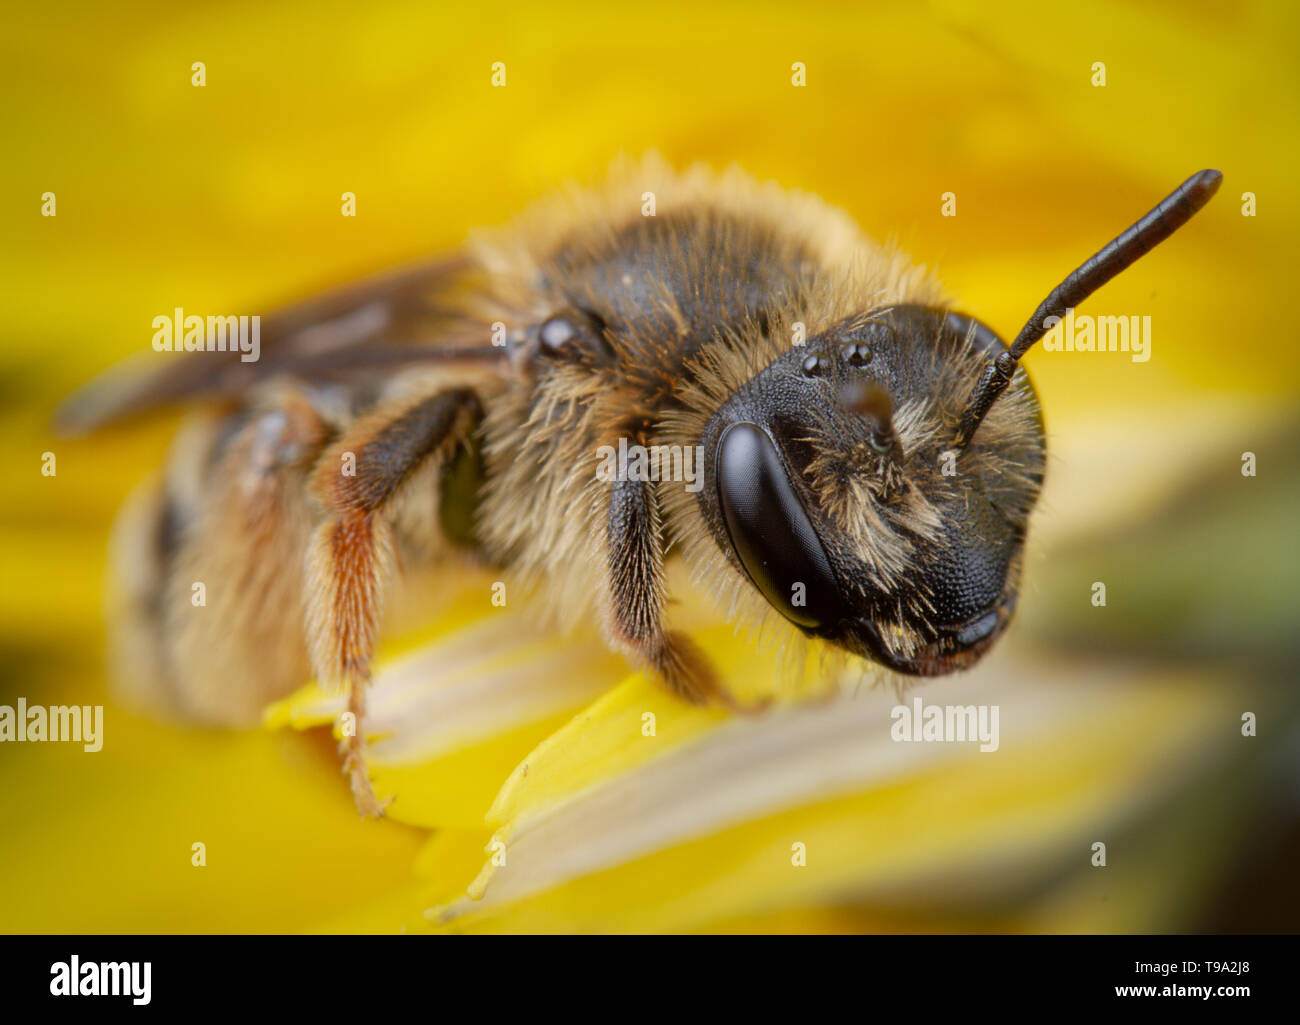 Peu de honeybee posant dans une fleur jaune se reposant Banque D'Images